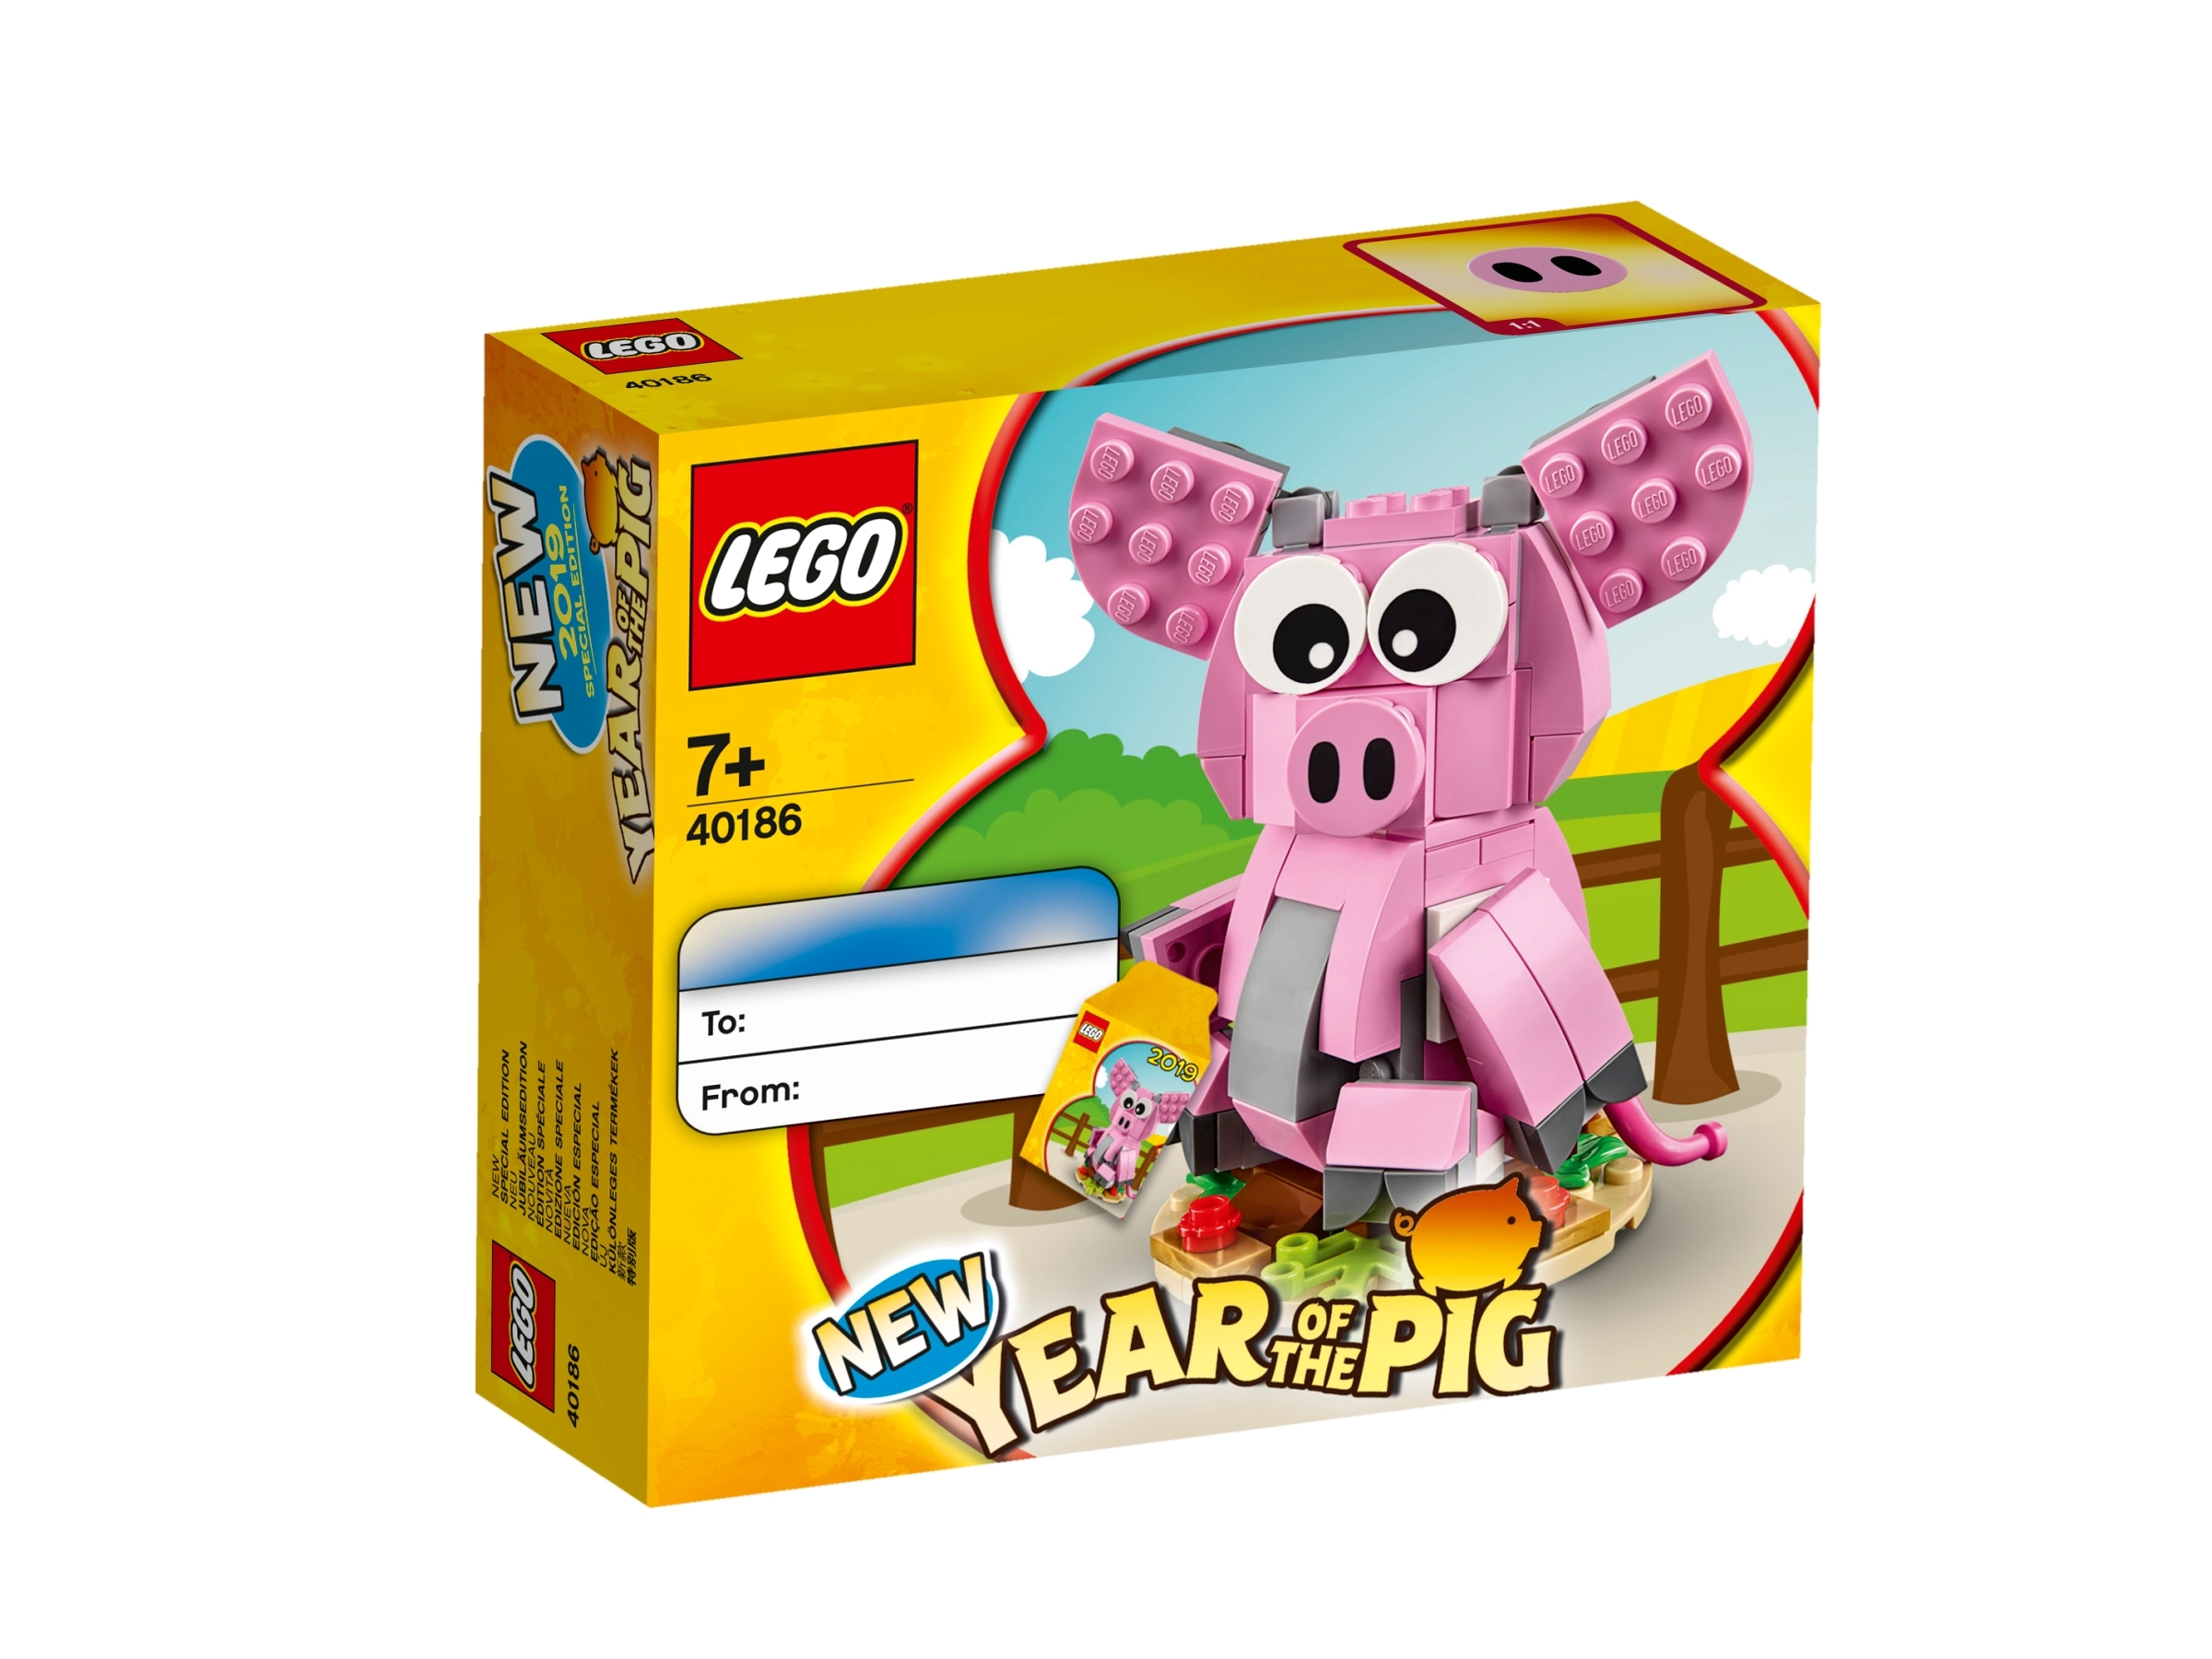 Sellado De Fábrica Caja *** Exclusivo Lego 40186 nuevo Año del Cerdo *** Nuevo 